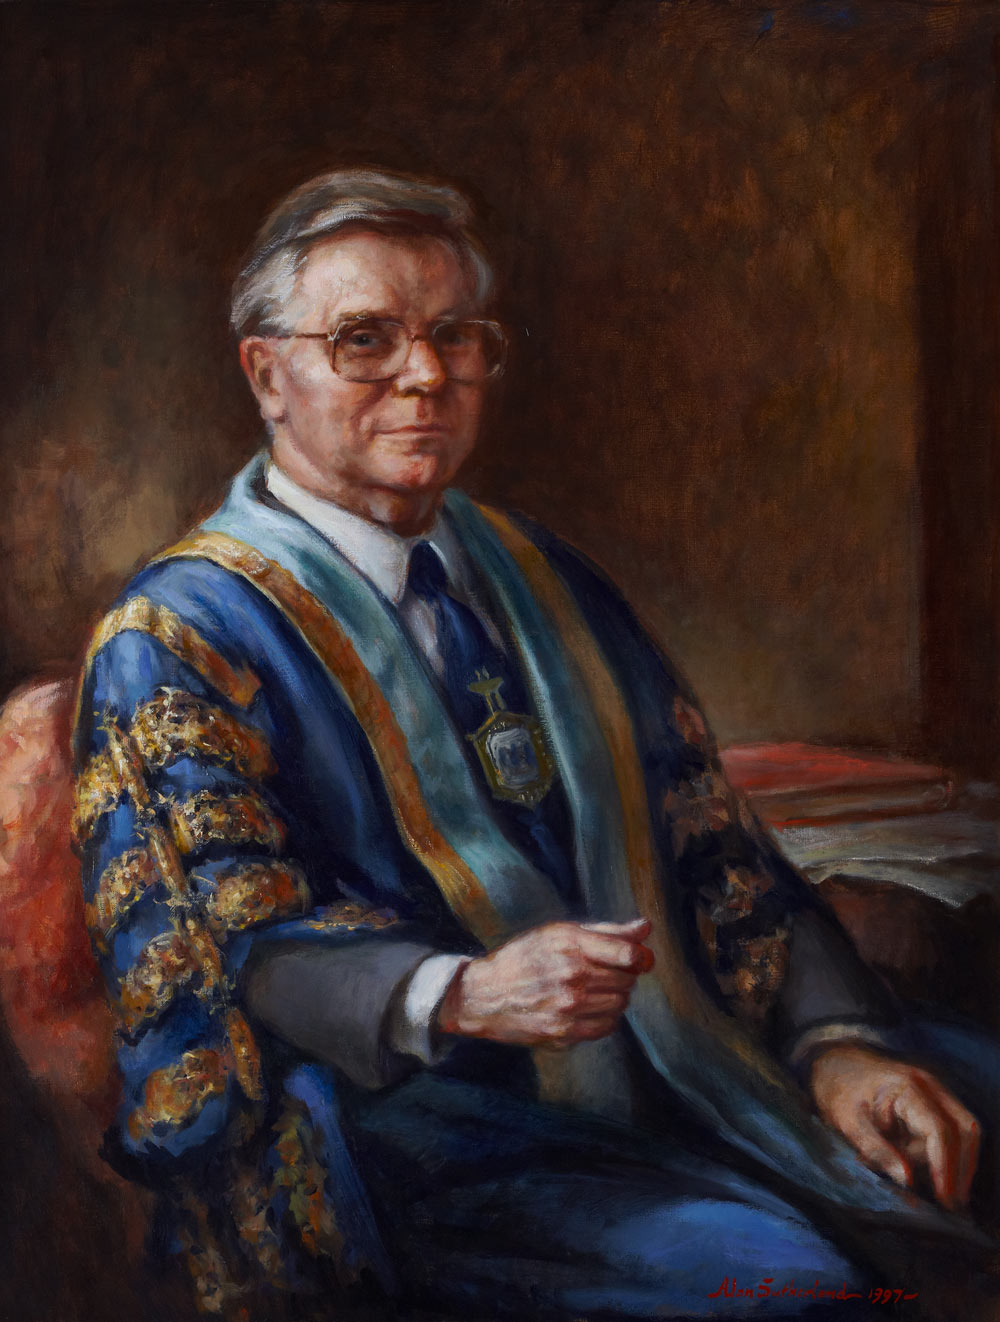 Professor Sir Robert Shields